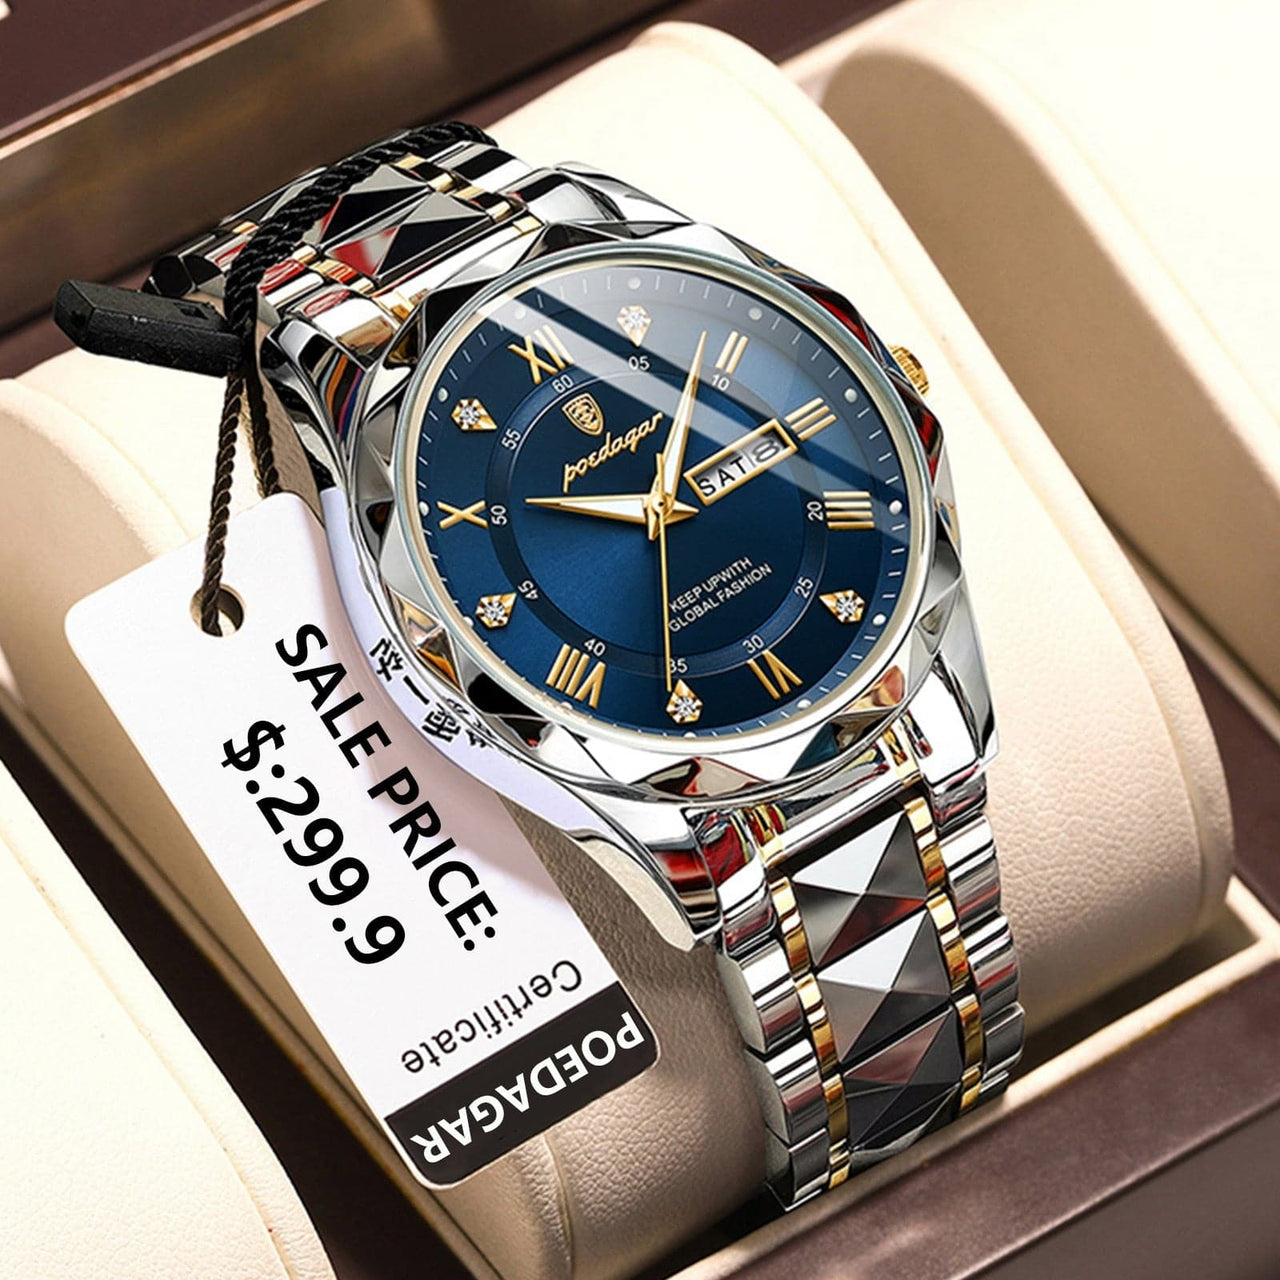 Luxury Wristwatch Waterproof Luminous Date Week Stainless Steel Quartz -  from Swag Street Wear Store 2022 - Just £28.99! Shop now at Swag Street Wear Store 2022